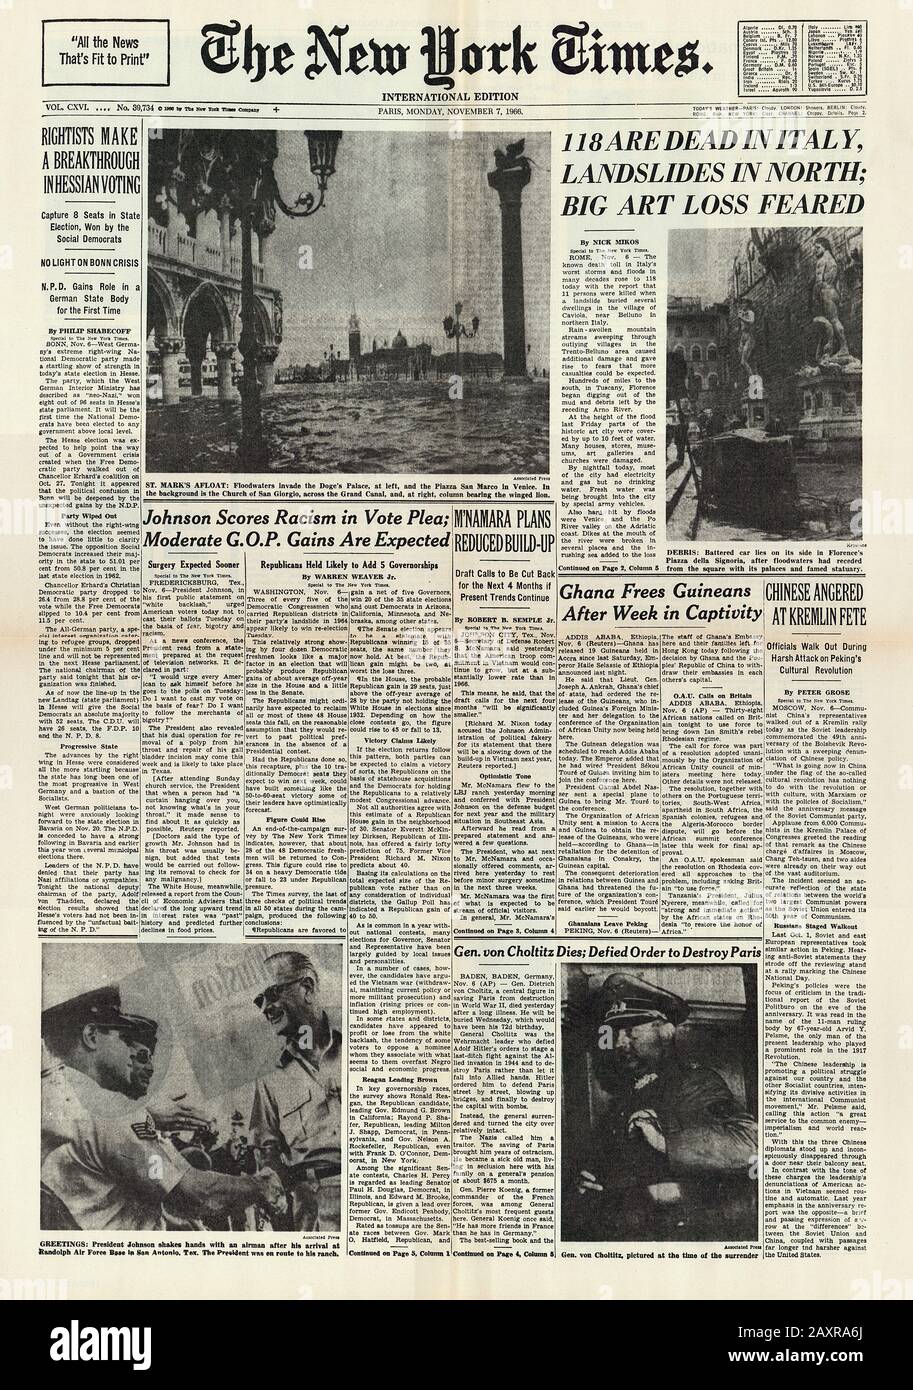 1966, 7. november, FIRENZE, ITALIEN: Die erste Seite der US-amerikanischen Zeitung THE NEW YORK TIMES über die Flutkatastrophe, die am selben Tag die Stadt FIRENZE verwüstete und VENEZIA überschwemmte. - VENEDIG - FLORENZ - Quotidiano - giornale - Cover - Copertina - prima pagina - ALLUVIONE - katastrophal naturale - inondazione - ITALIA - FOTO STORICHE - GESCHICHTE - GEOGRAFIA - GEOGRAPHIE - GEOGRAFIA - FOTO STORICHE - GESCHICHTE - HISTORISCH - Zeitlinien - notiziario - notiziie - notiziie - Nazi-General Dietrich von CHOLTITZ --- Archivio GBB Stockfoto